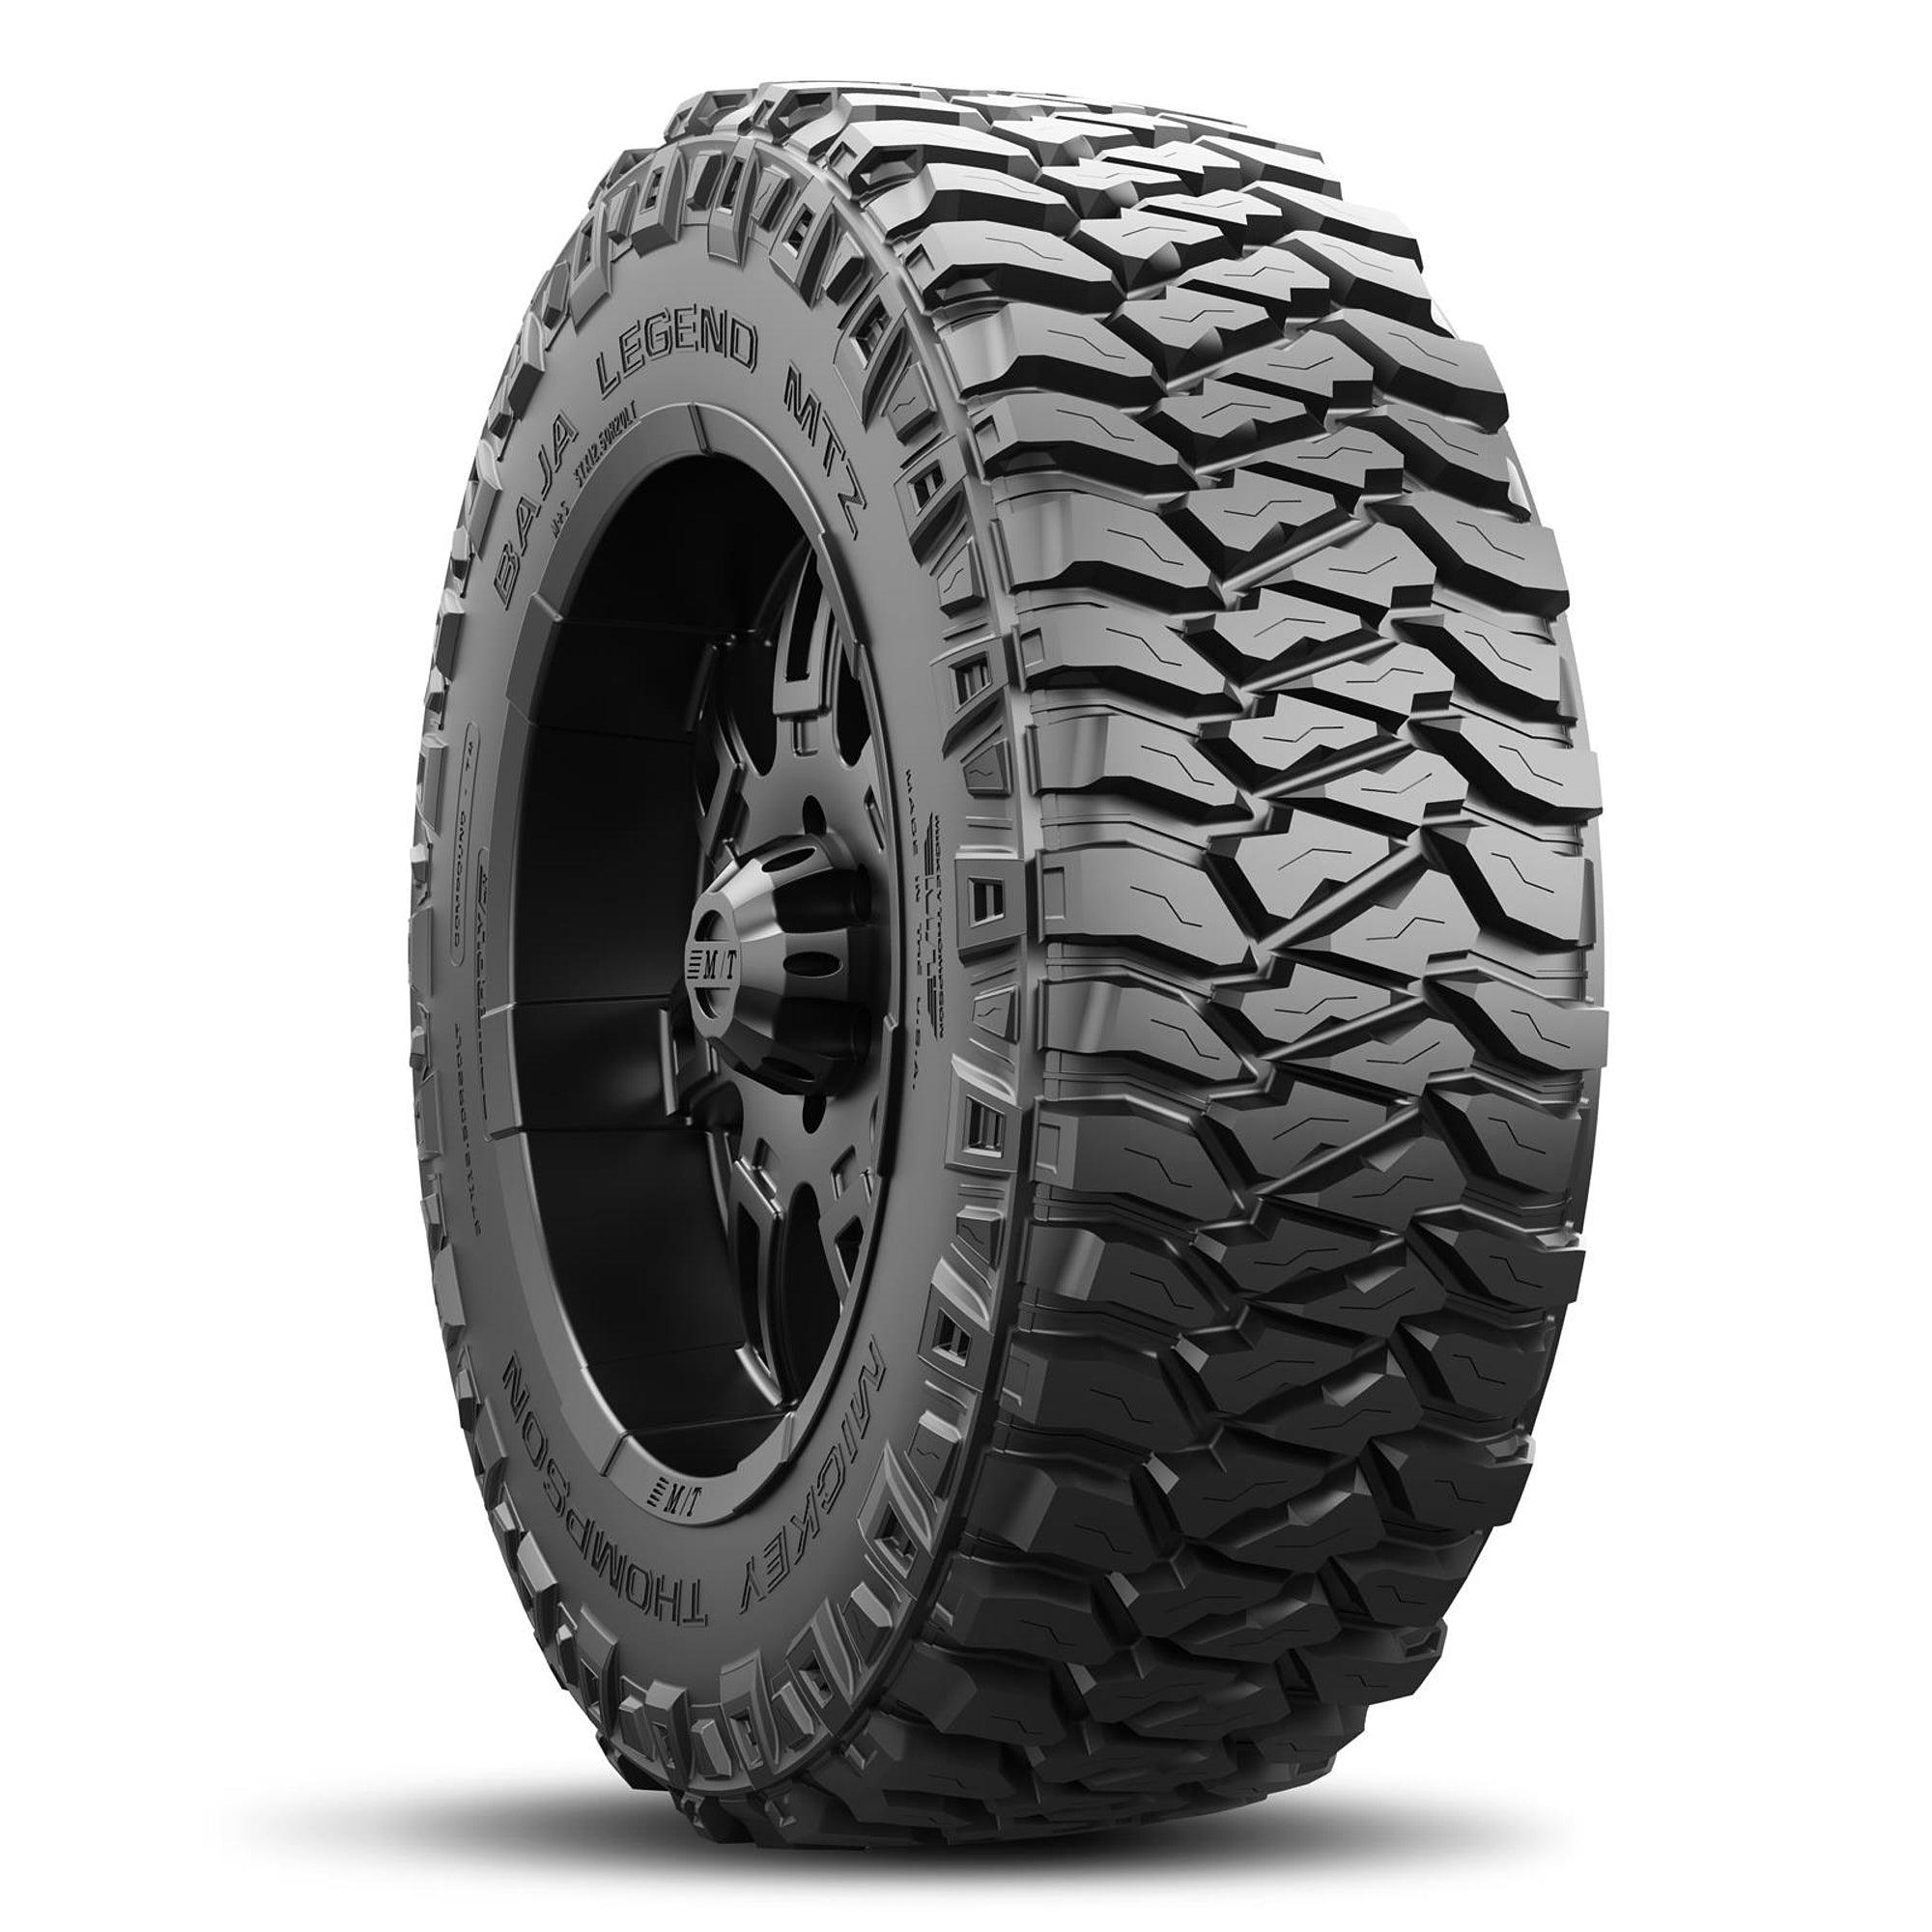 Baja Legend MTZ Tire 33X12.50R20LT 114Q - Burlile Performance Products